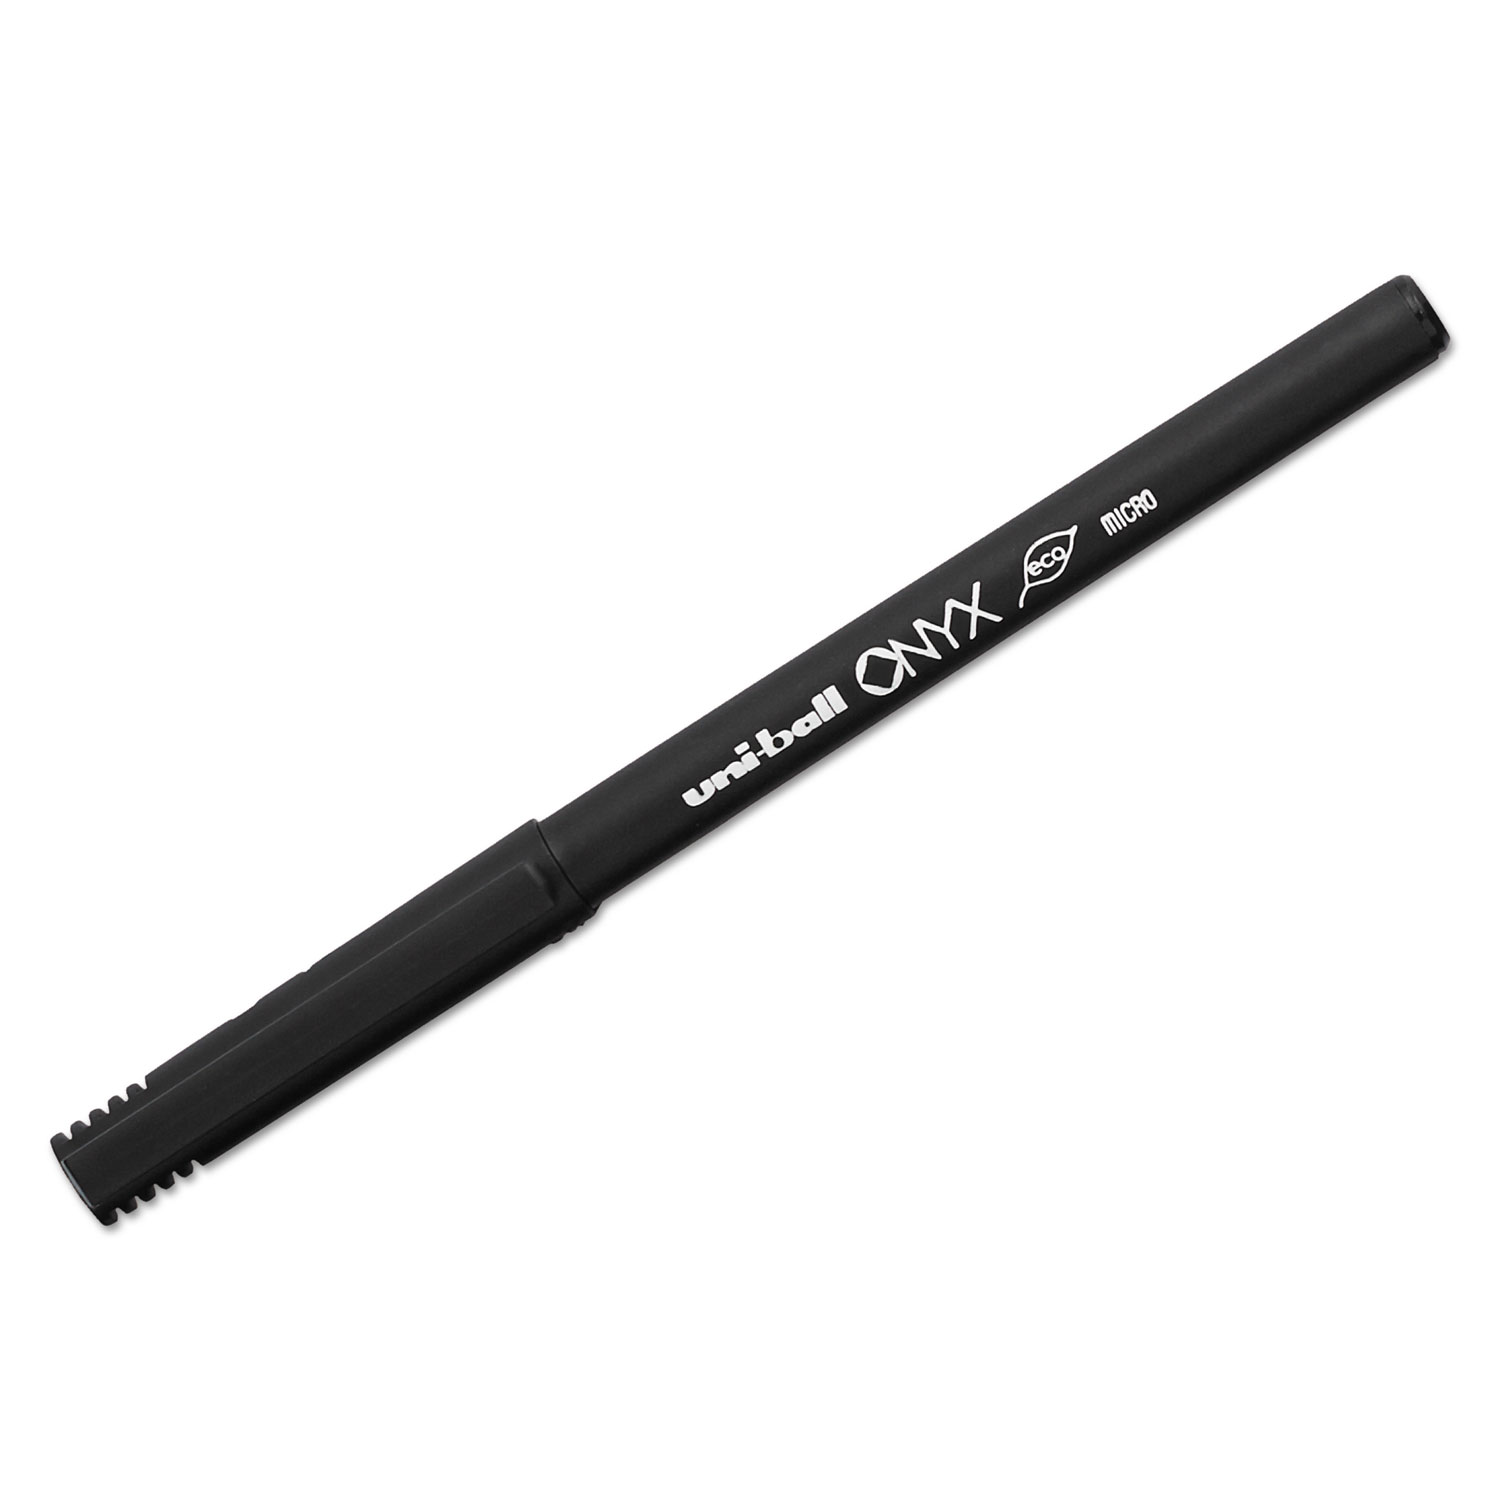 ONYX Stick Roller Ball Pen, Micro 0.5mm, Blue Ink, Black Matte Barrel, Dozen